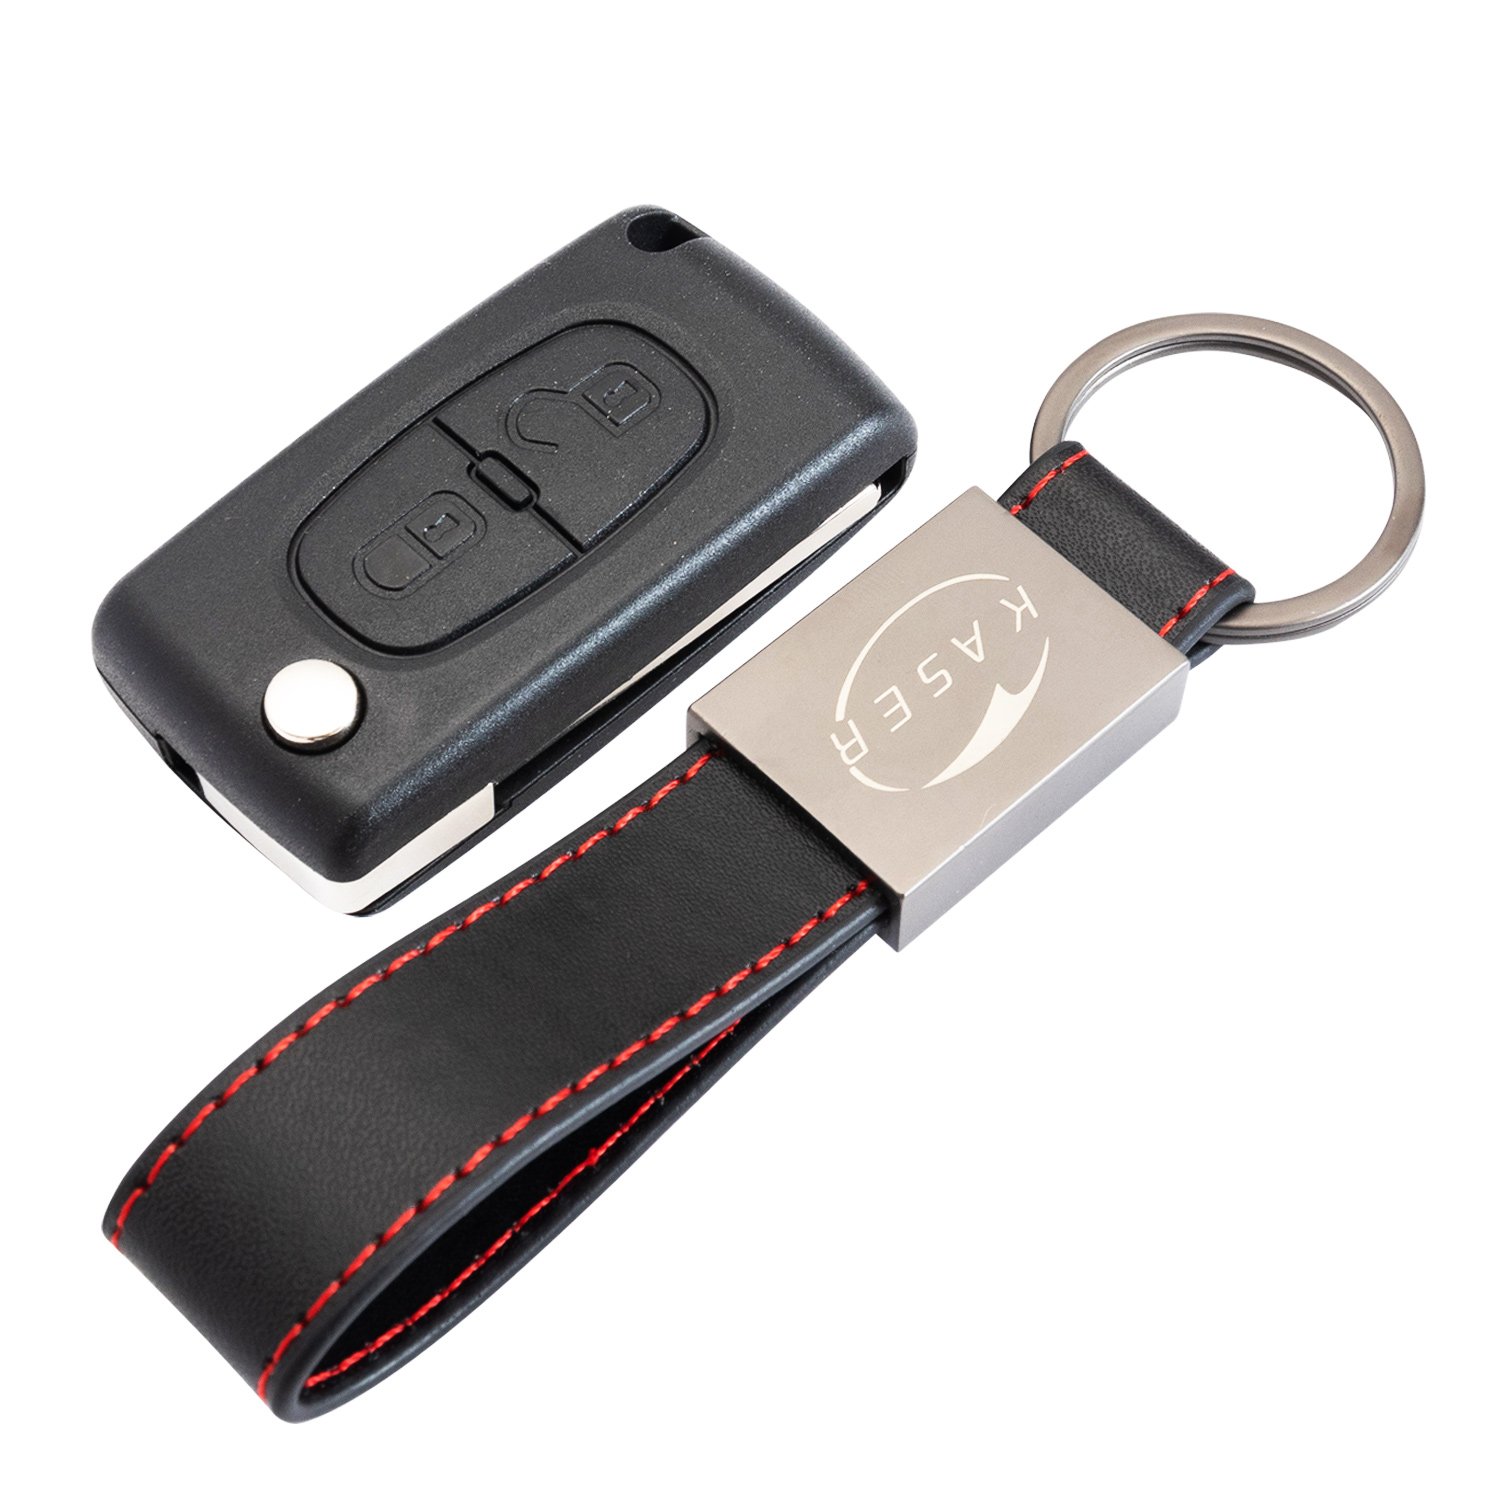 KASER Schlüssel Gehäuse Fernbedienung für Peugeot 2 Tasten Autoschlüssel Funkschlüssel 107 207 307 407 308 409 407 607 mit Leder Schlüsselanhänger von Kaser